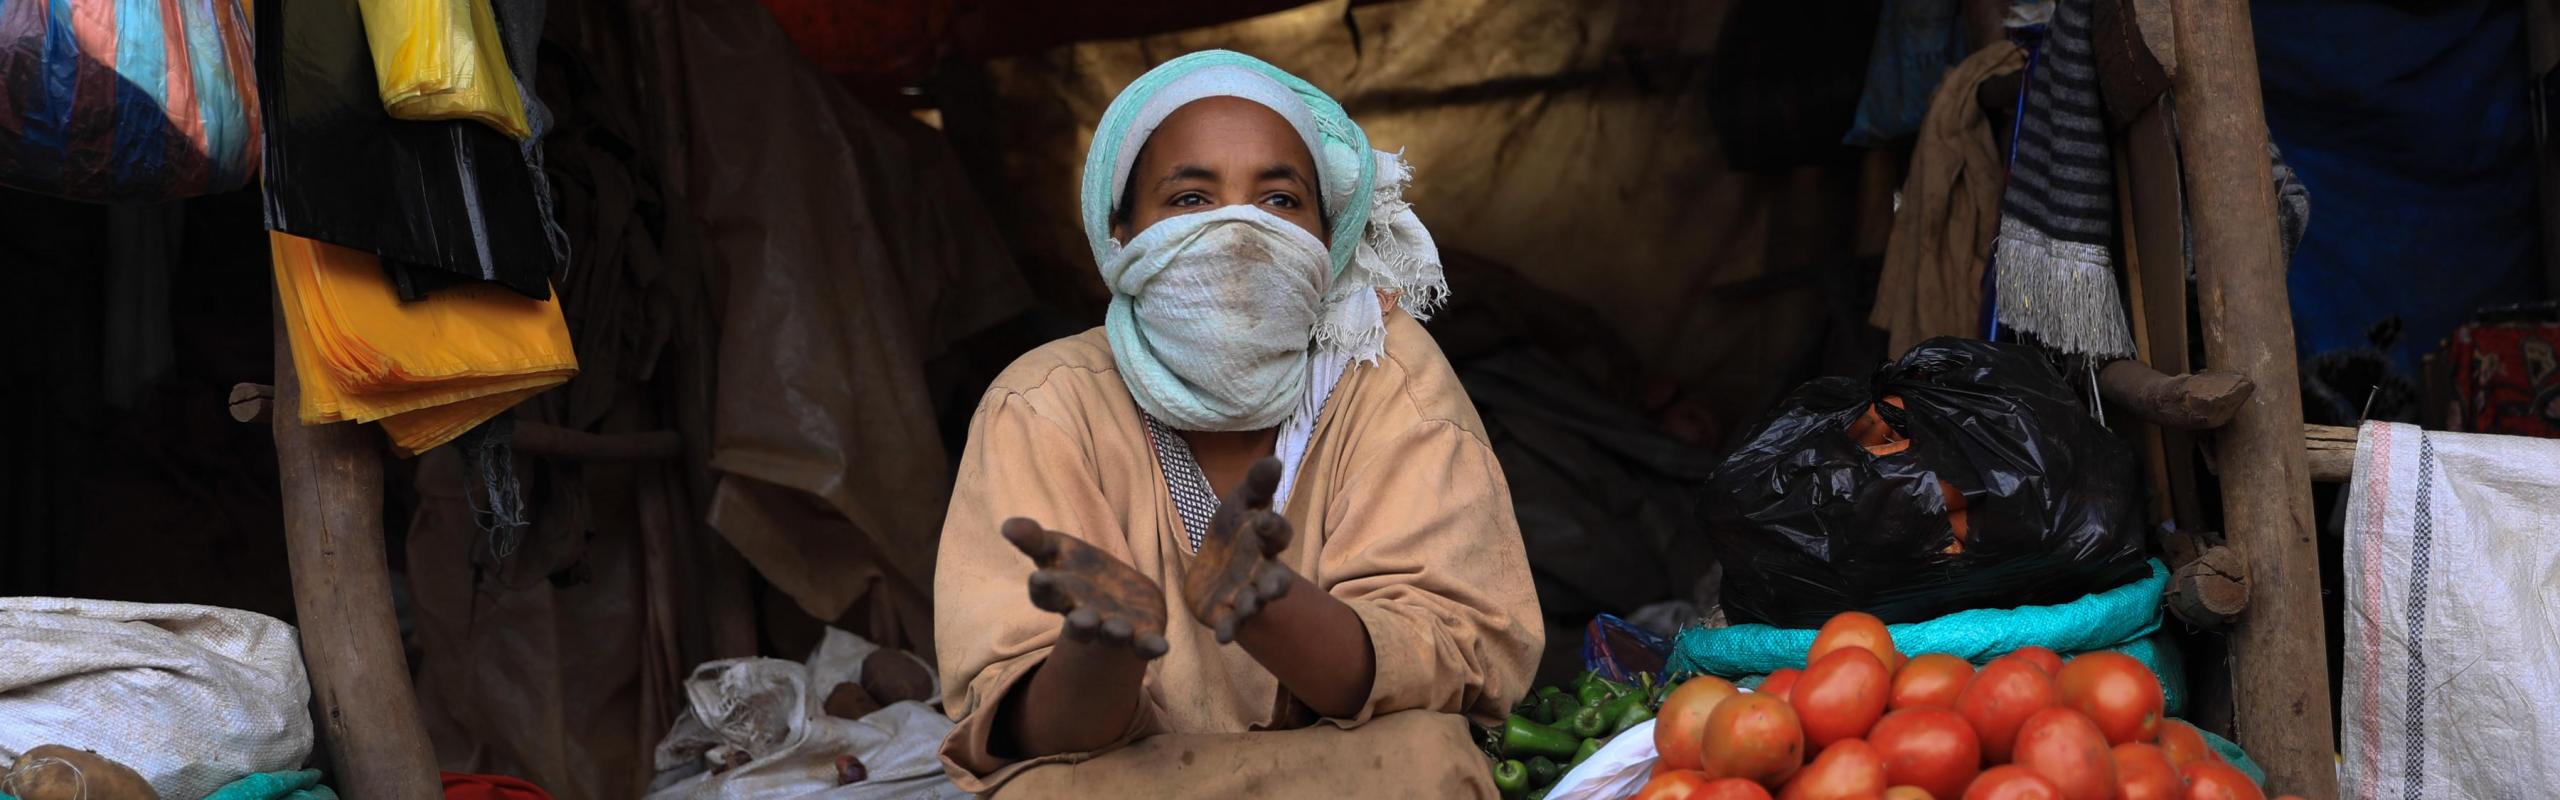 ne femme portant un masque facial en tissu est assise sur le marché de Saris en Éthiopie, entourée de sacs en tissu et de tas d'oignons, de pommes de terre et de tomates.